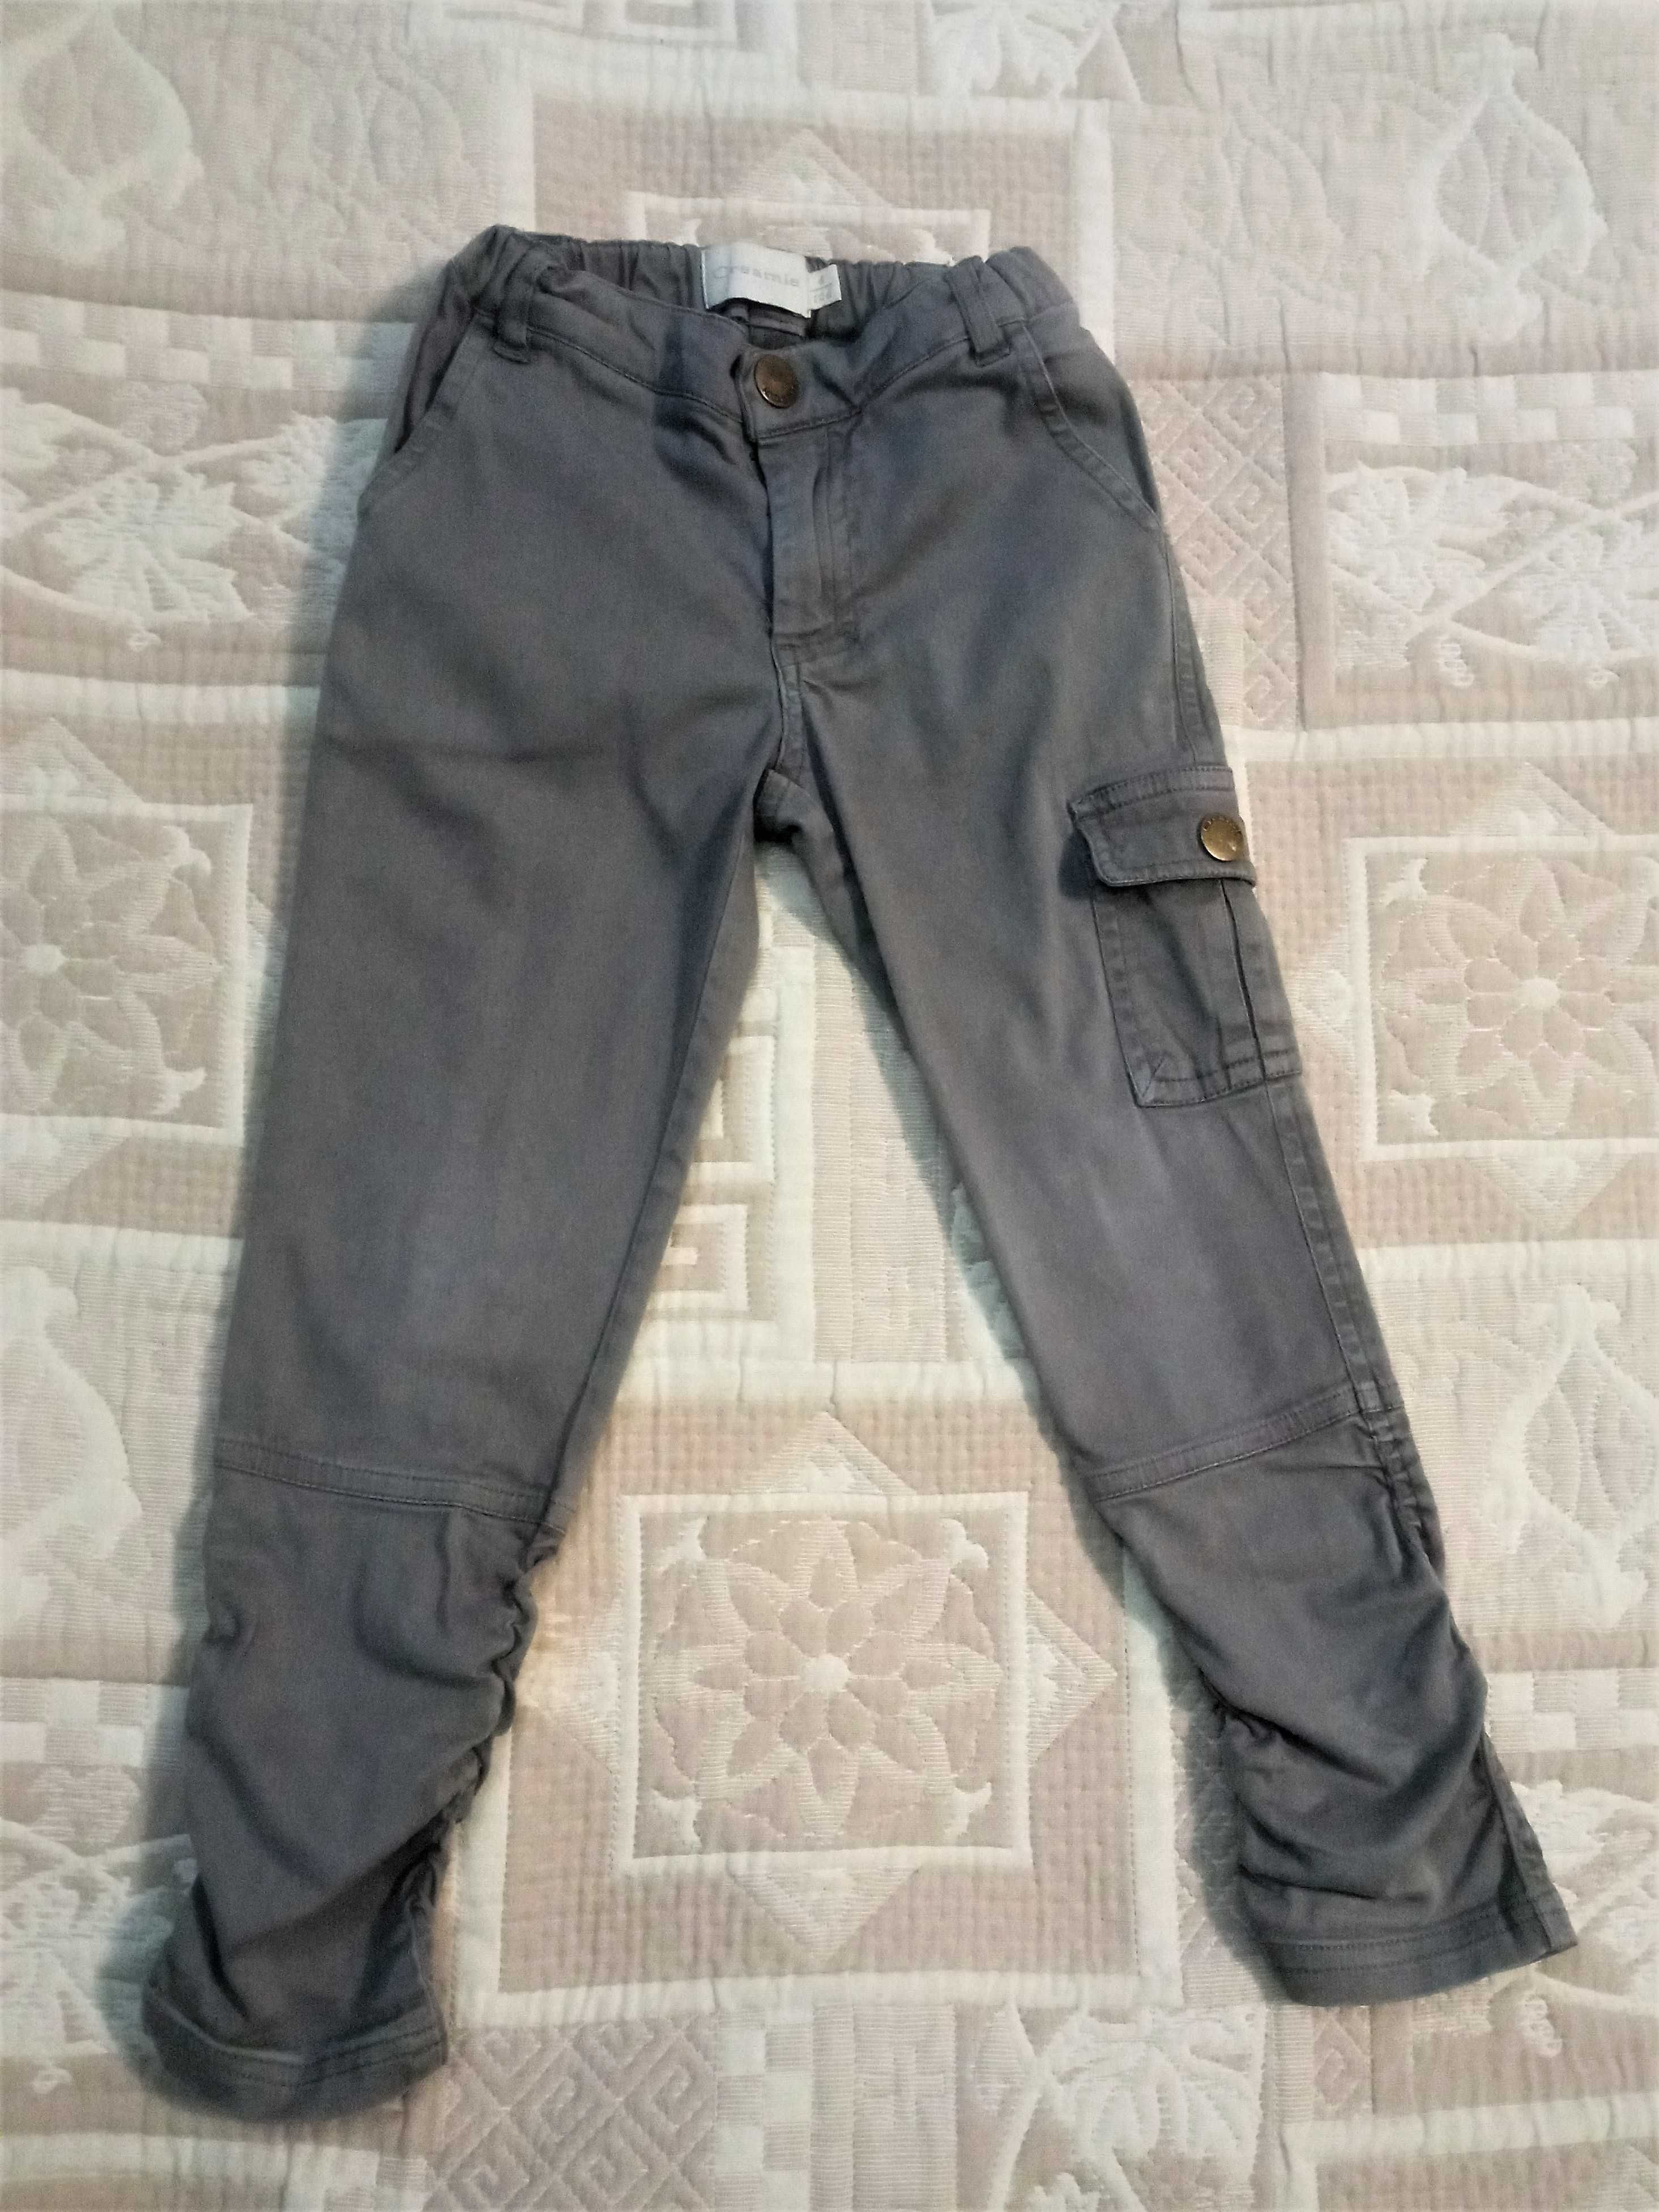 Szare spodnie dla chłopca, rozmiar 104